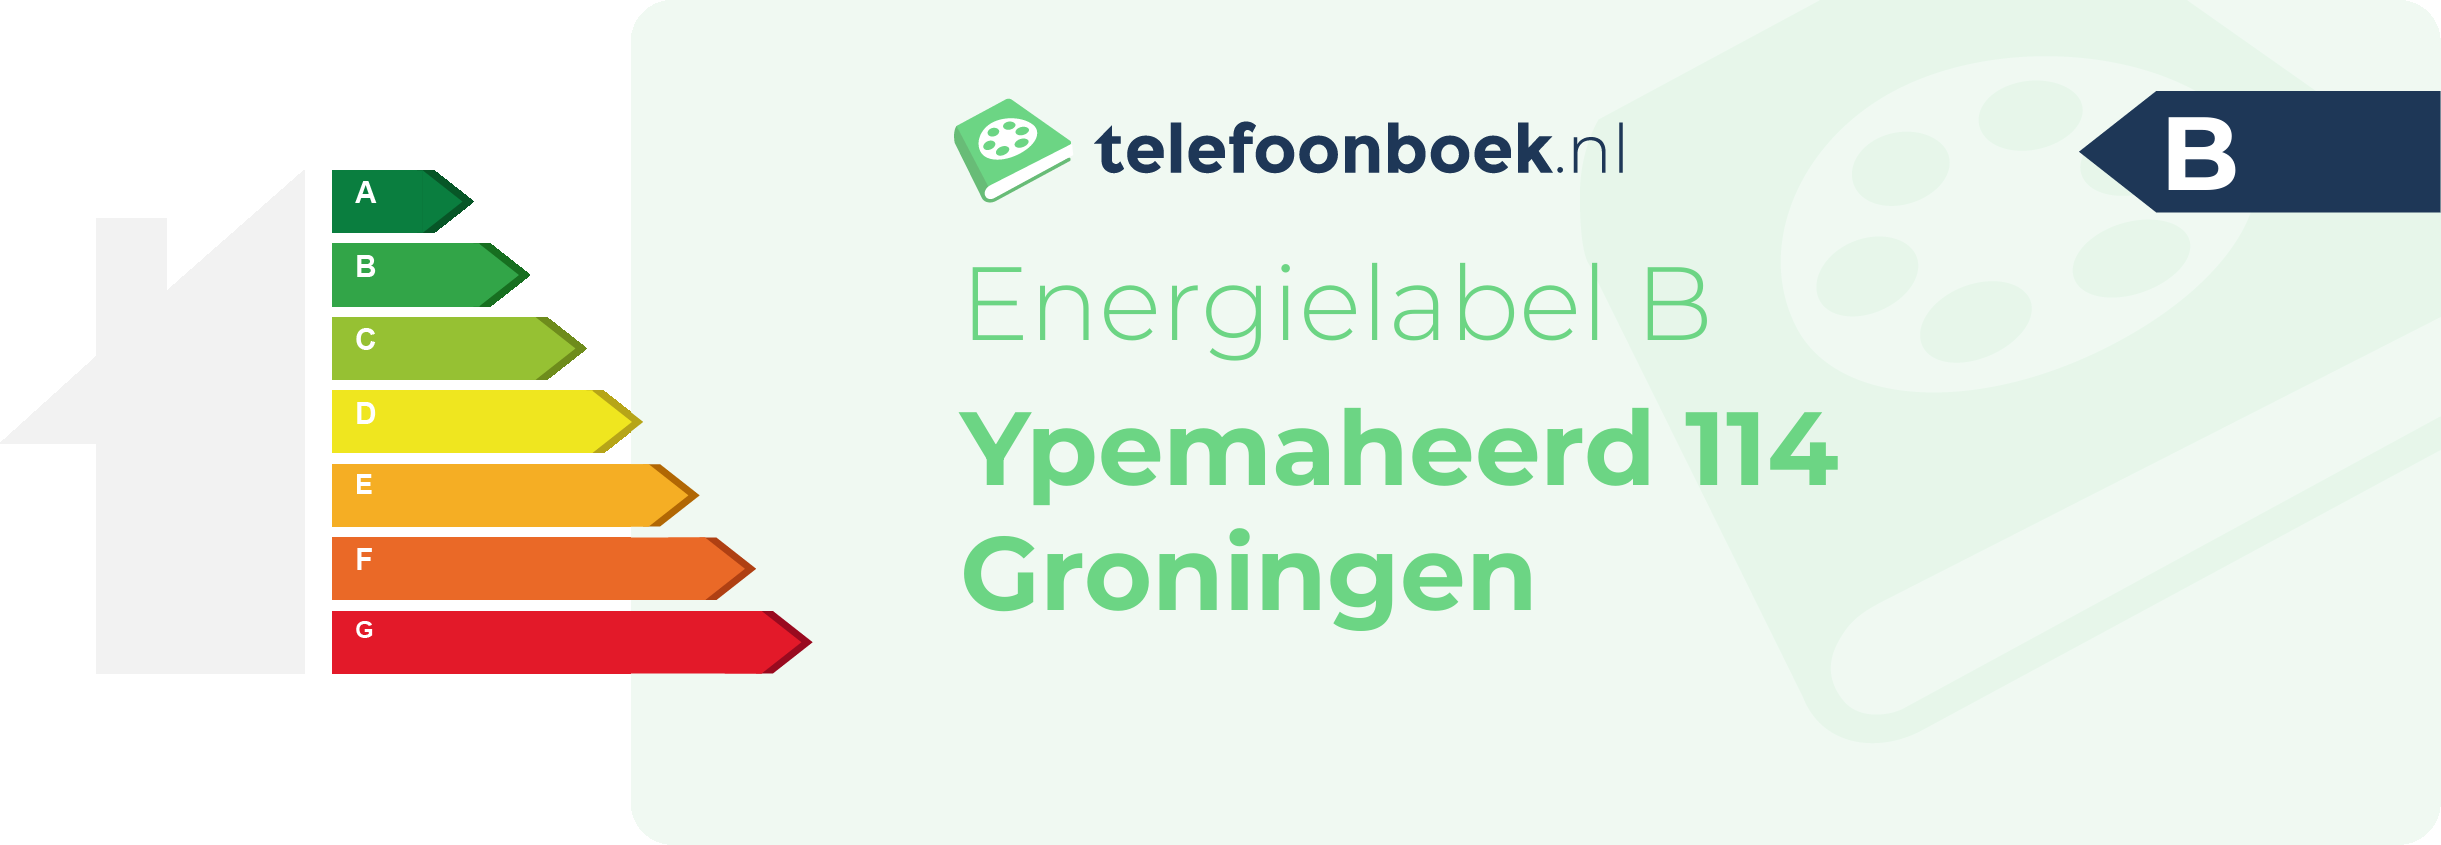 Energielabel Ypemaheerd 114 Groningen